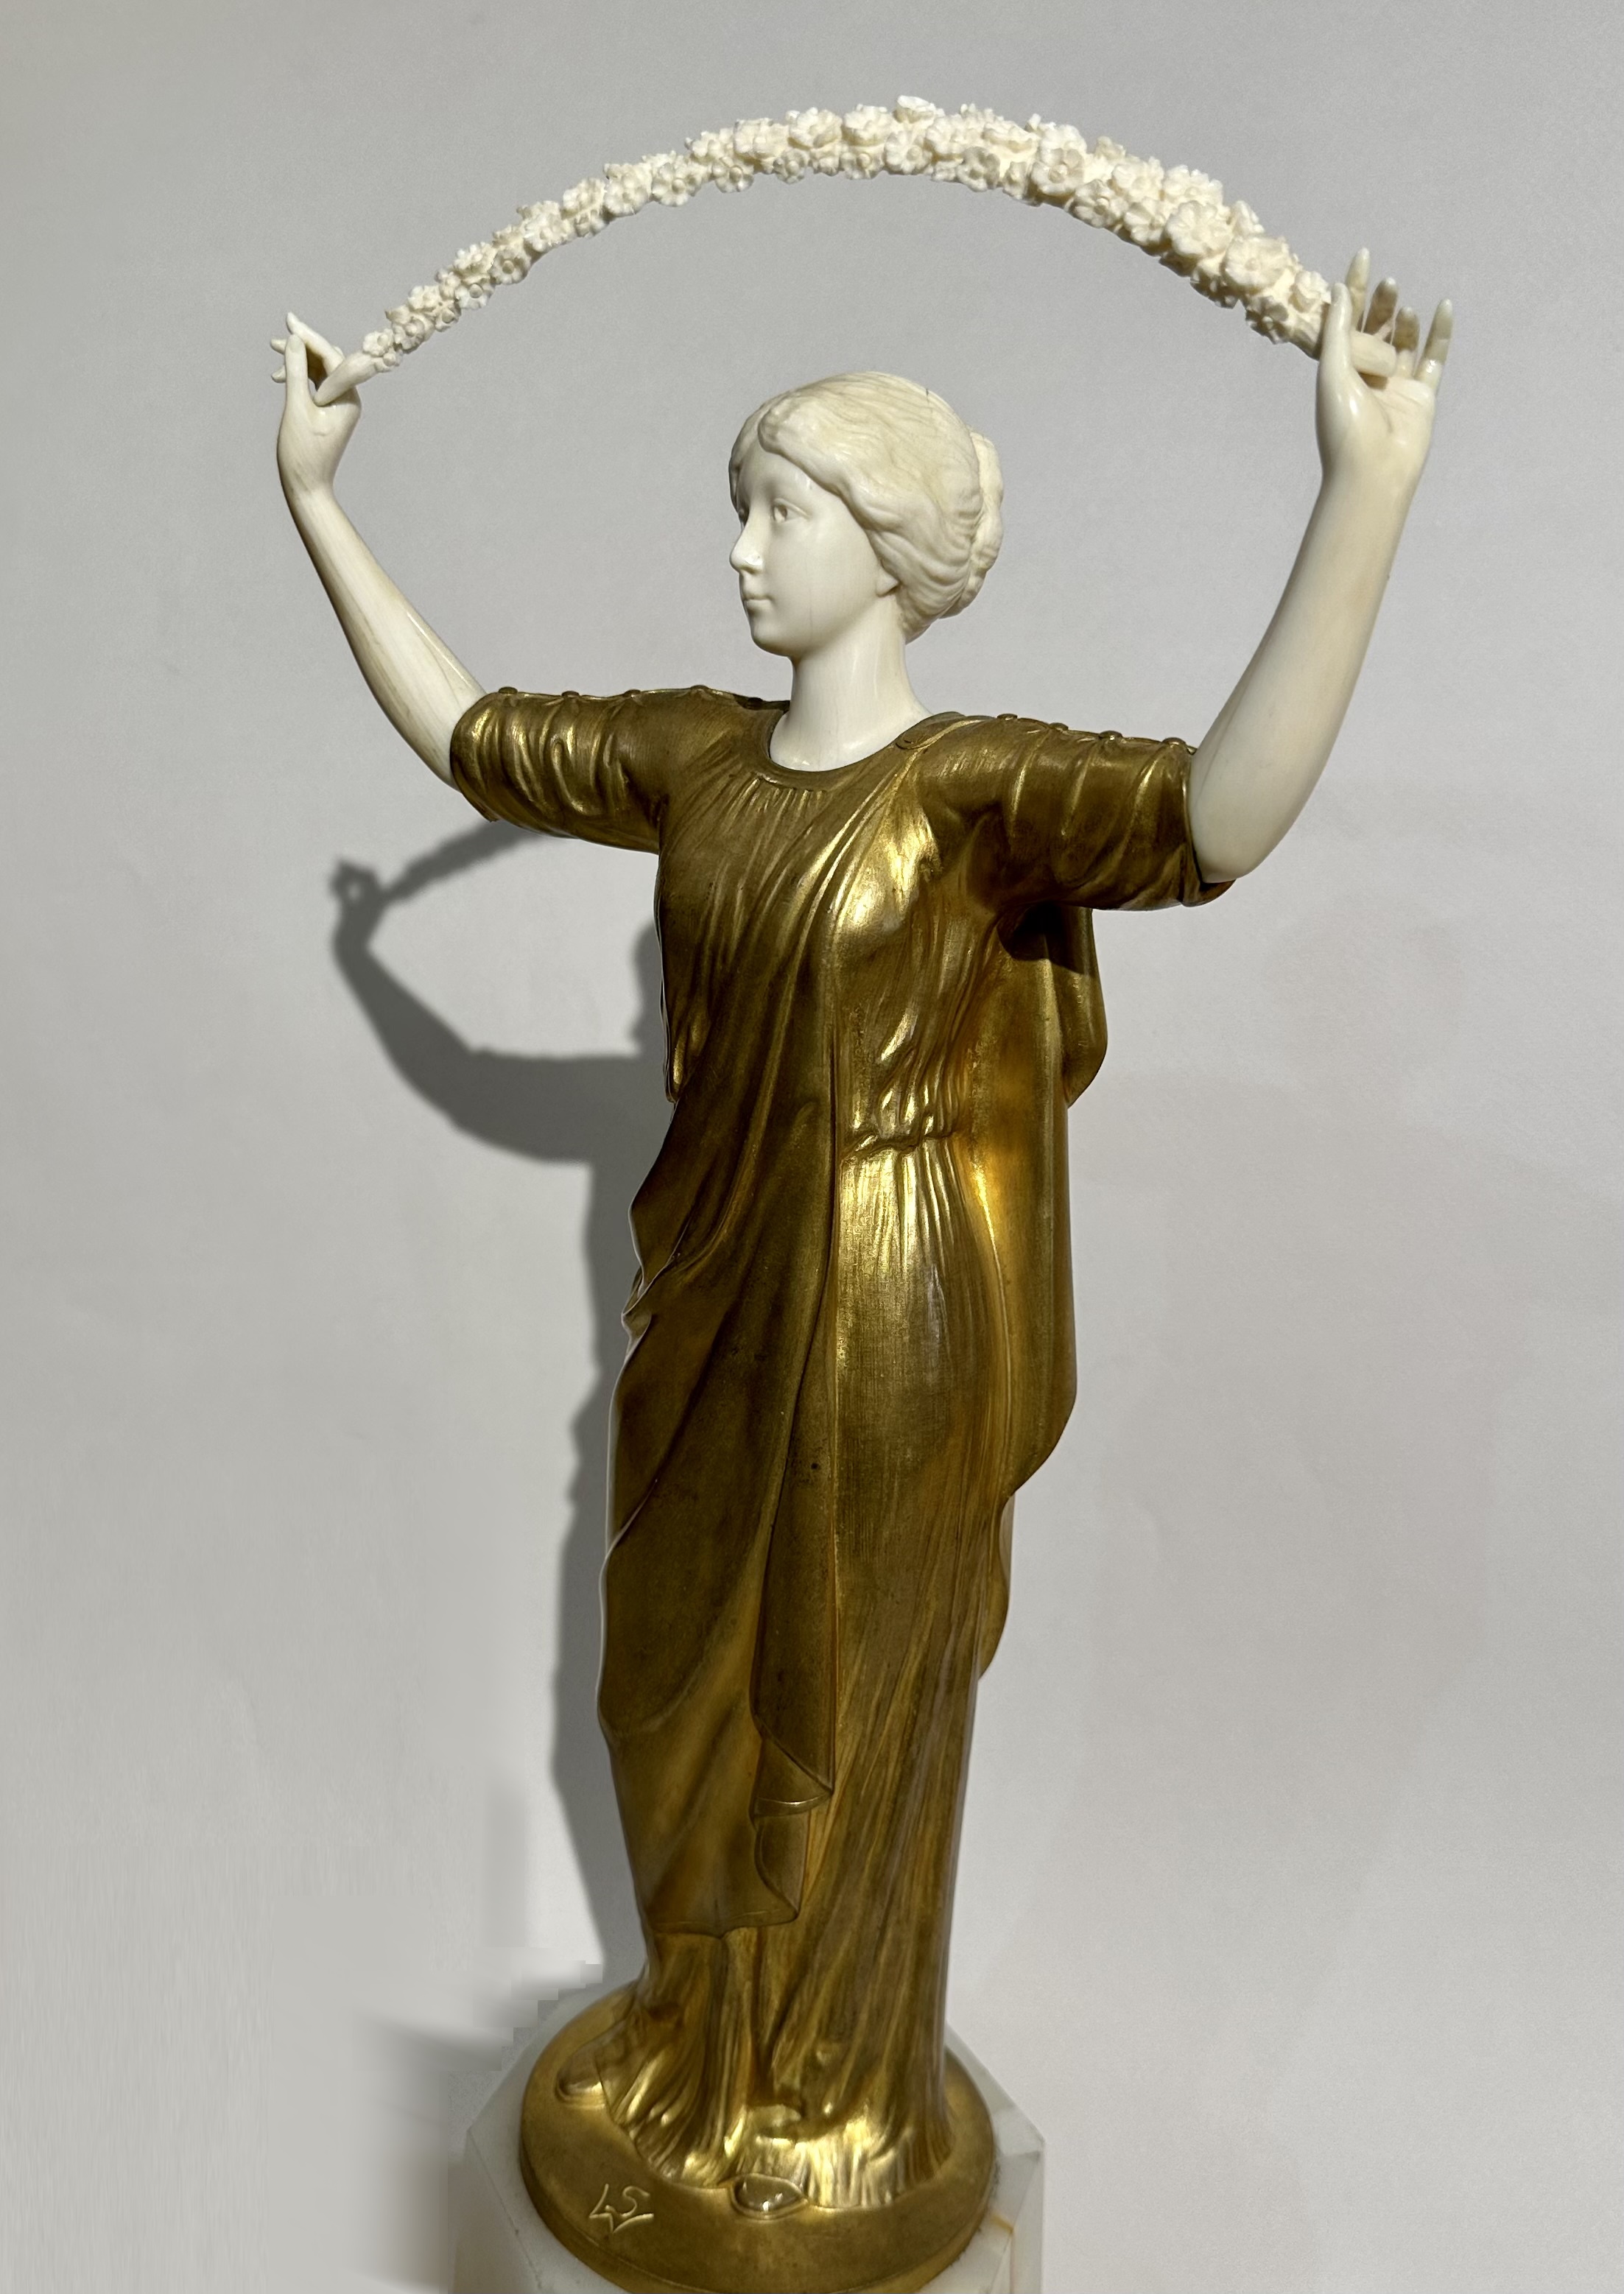 Скульптура "Девушка с гирляндой", Германия, завод "Гладенбека», 1900-е гг. 